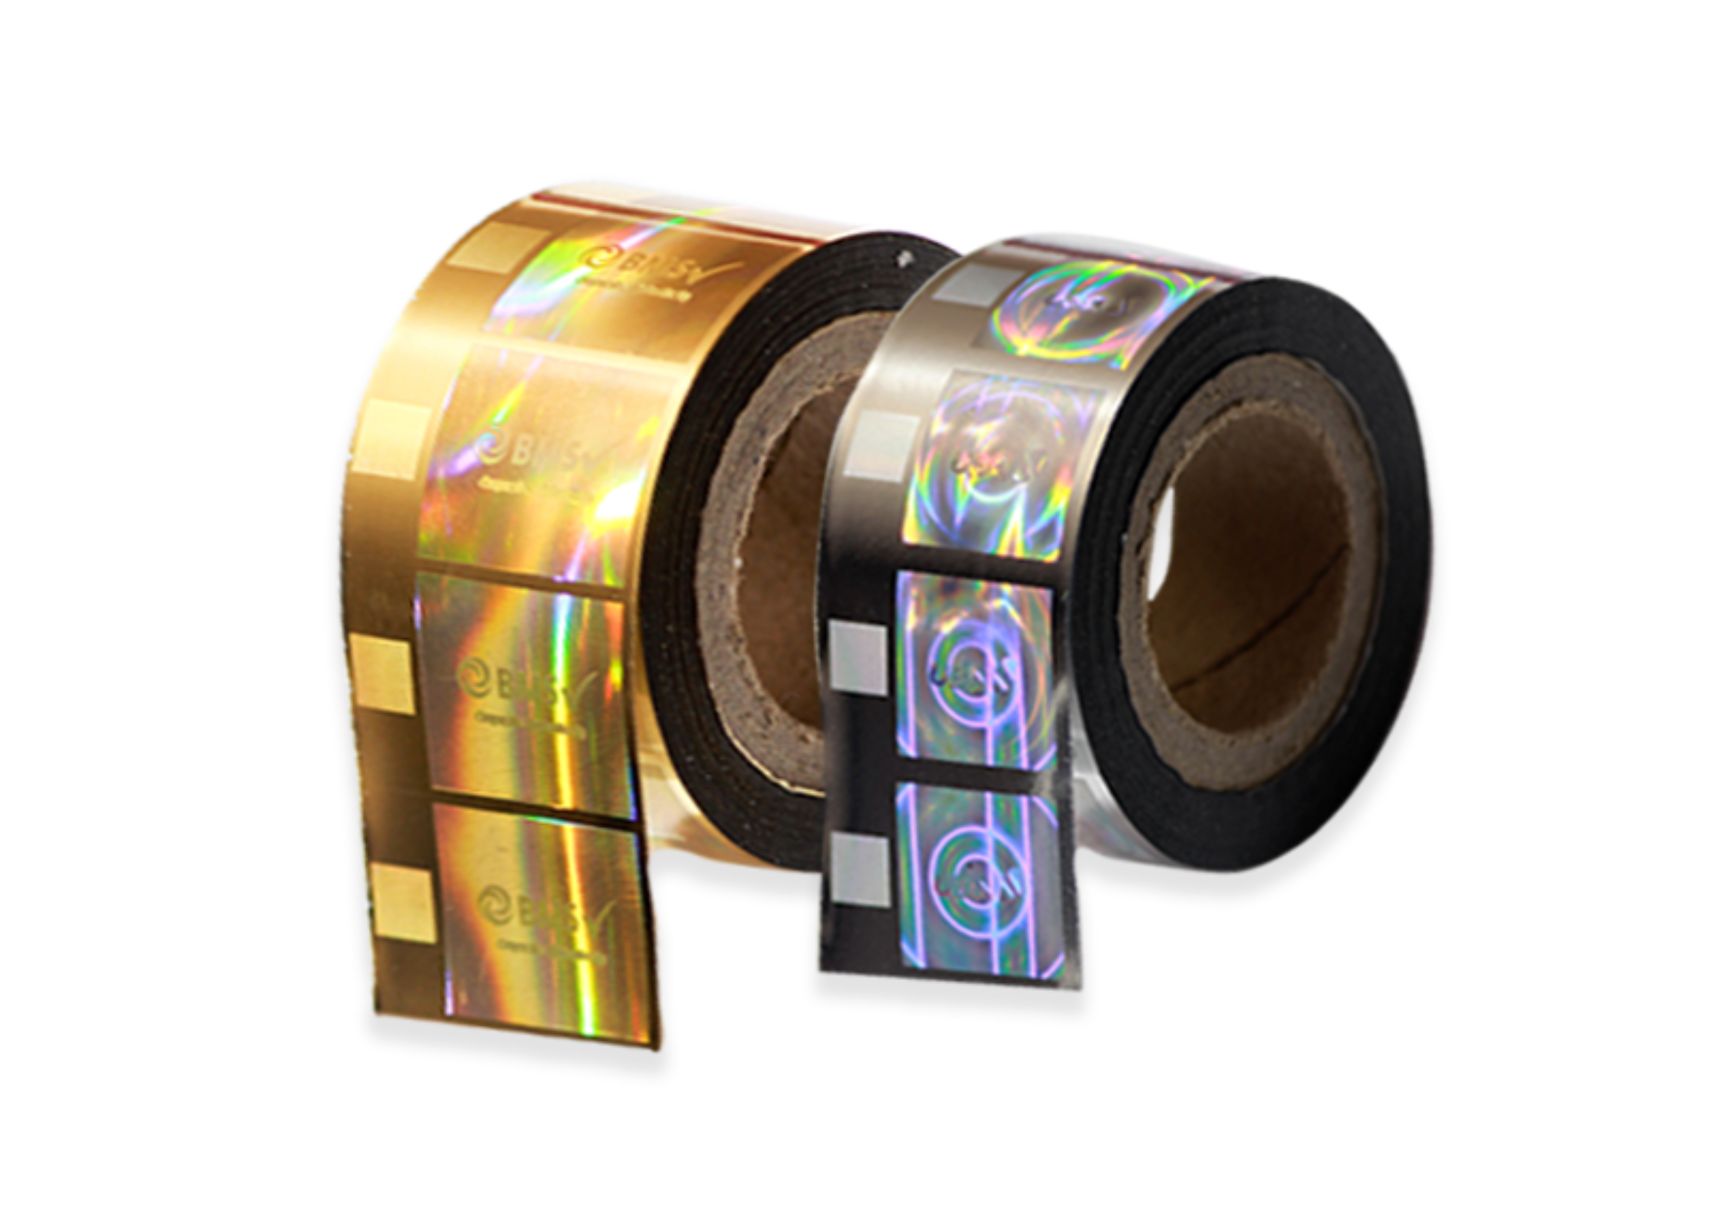 Hologram Stickers Manufacturer - Matrixhologram